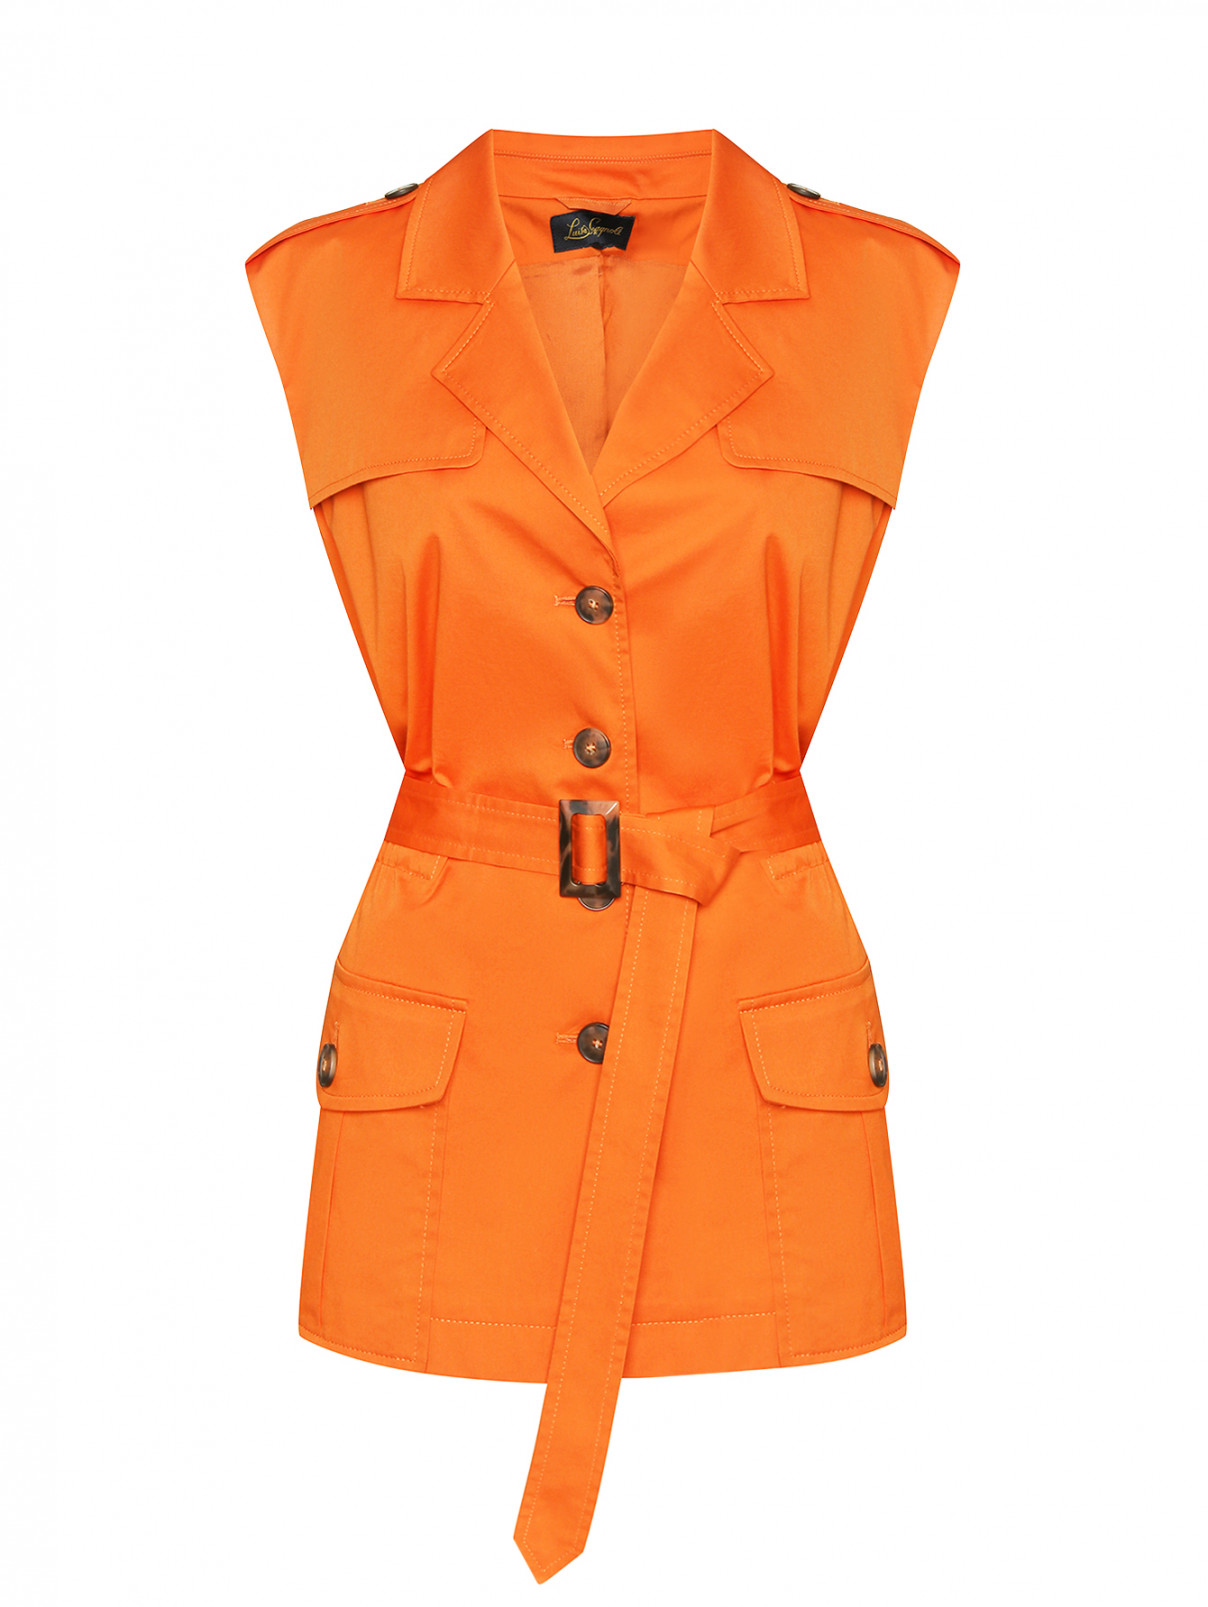 Жилет из хлопка с карманами Luisa Spagnoli  –  Общий вид  – Цвет:  Оранжевый